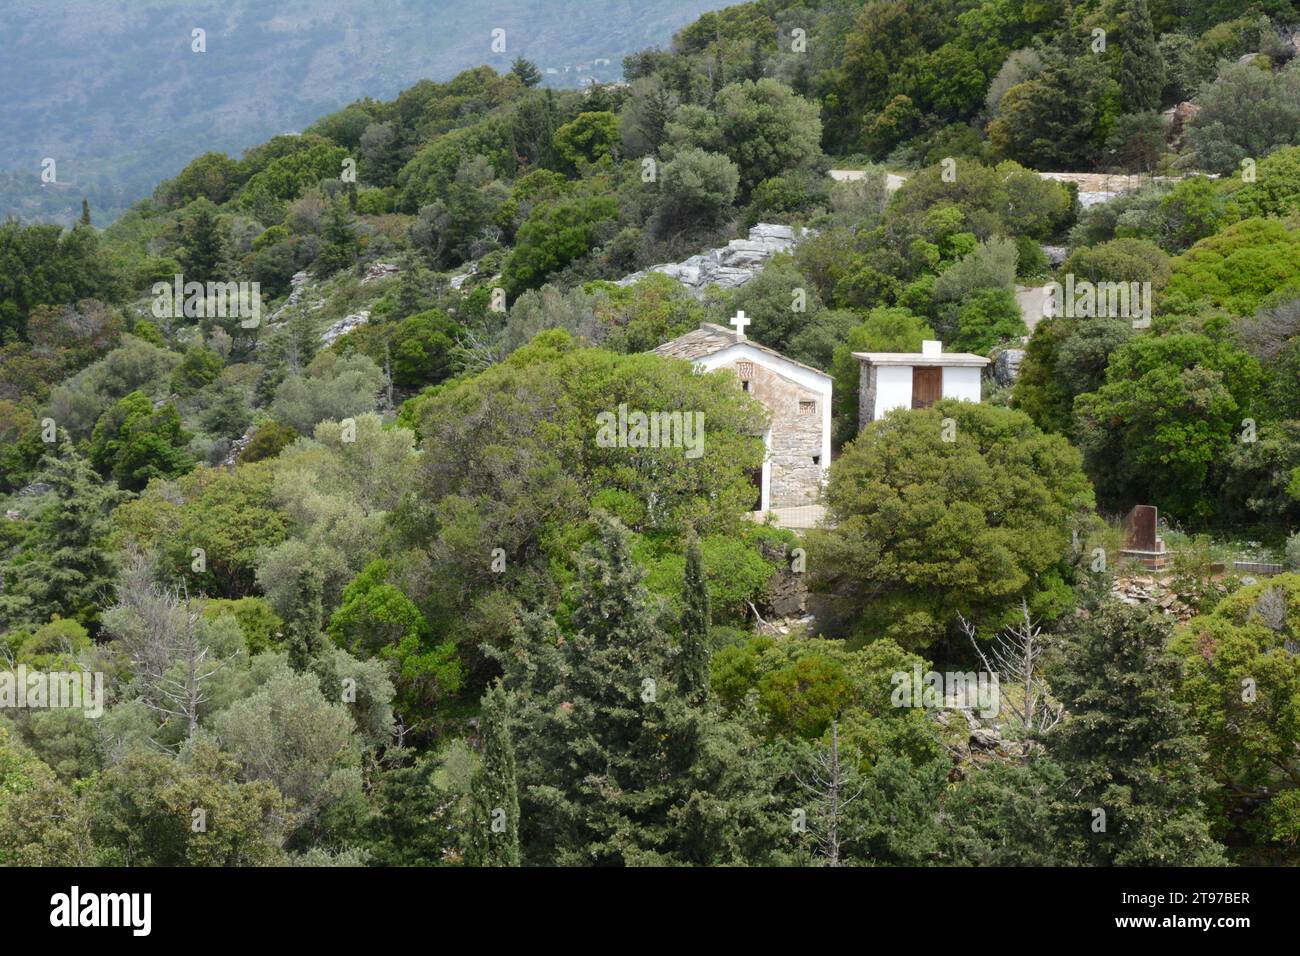 Una piccola chiesa ortodossa cristiana o cappella situata sulle colline e nella foresta sopra la città di Evdilos, sull'isola greca di Ikaria, in Grecia. Foto Stock